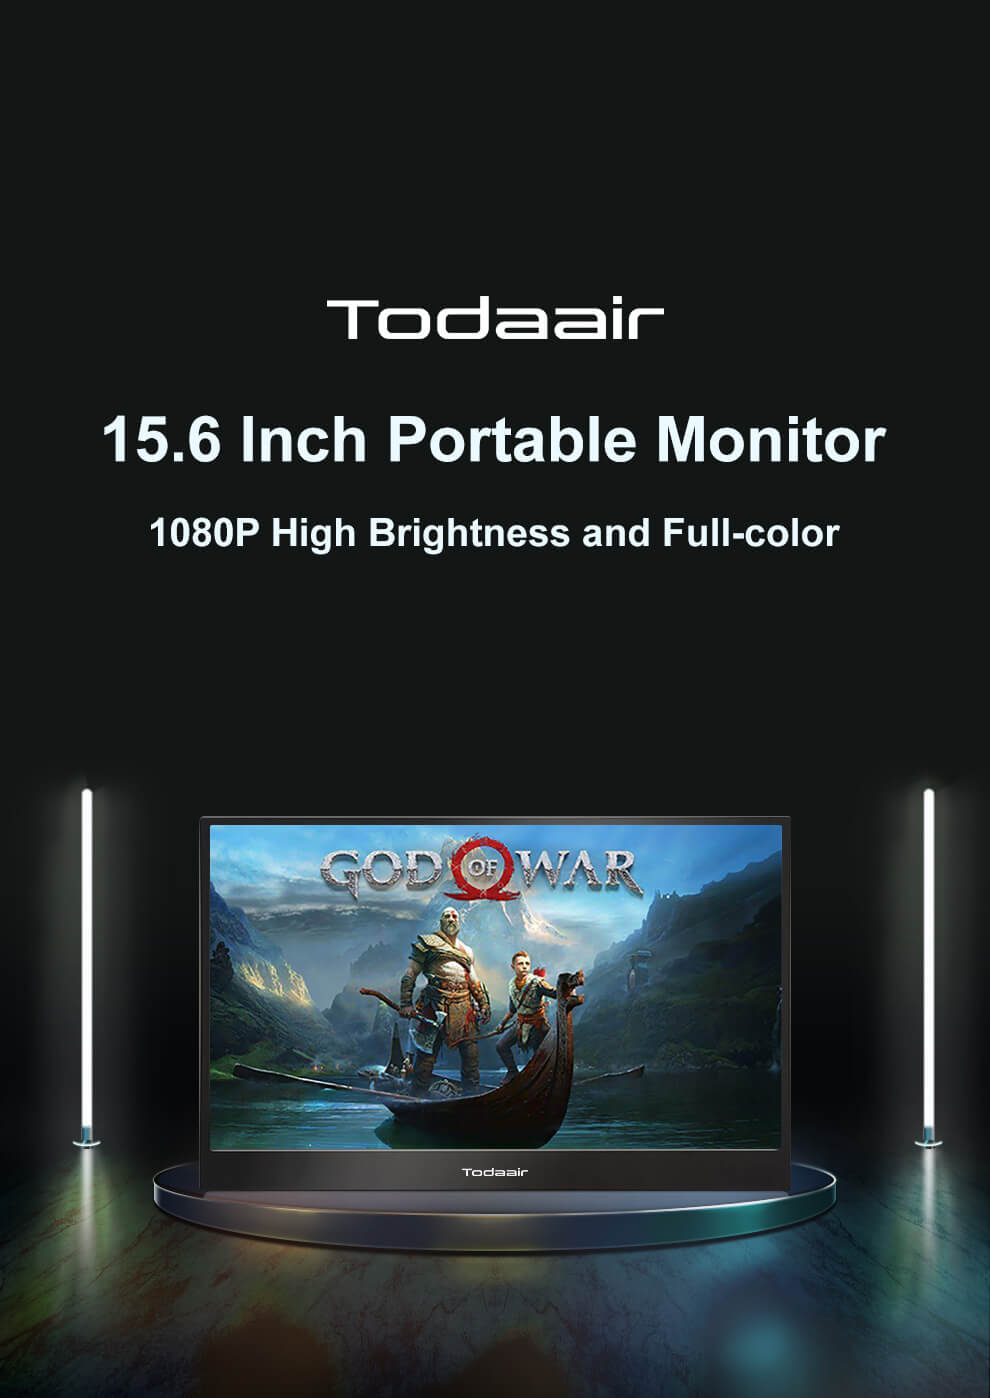 Todaair 15.6 inch 1080P portable monitor